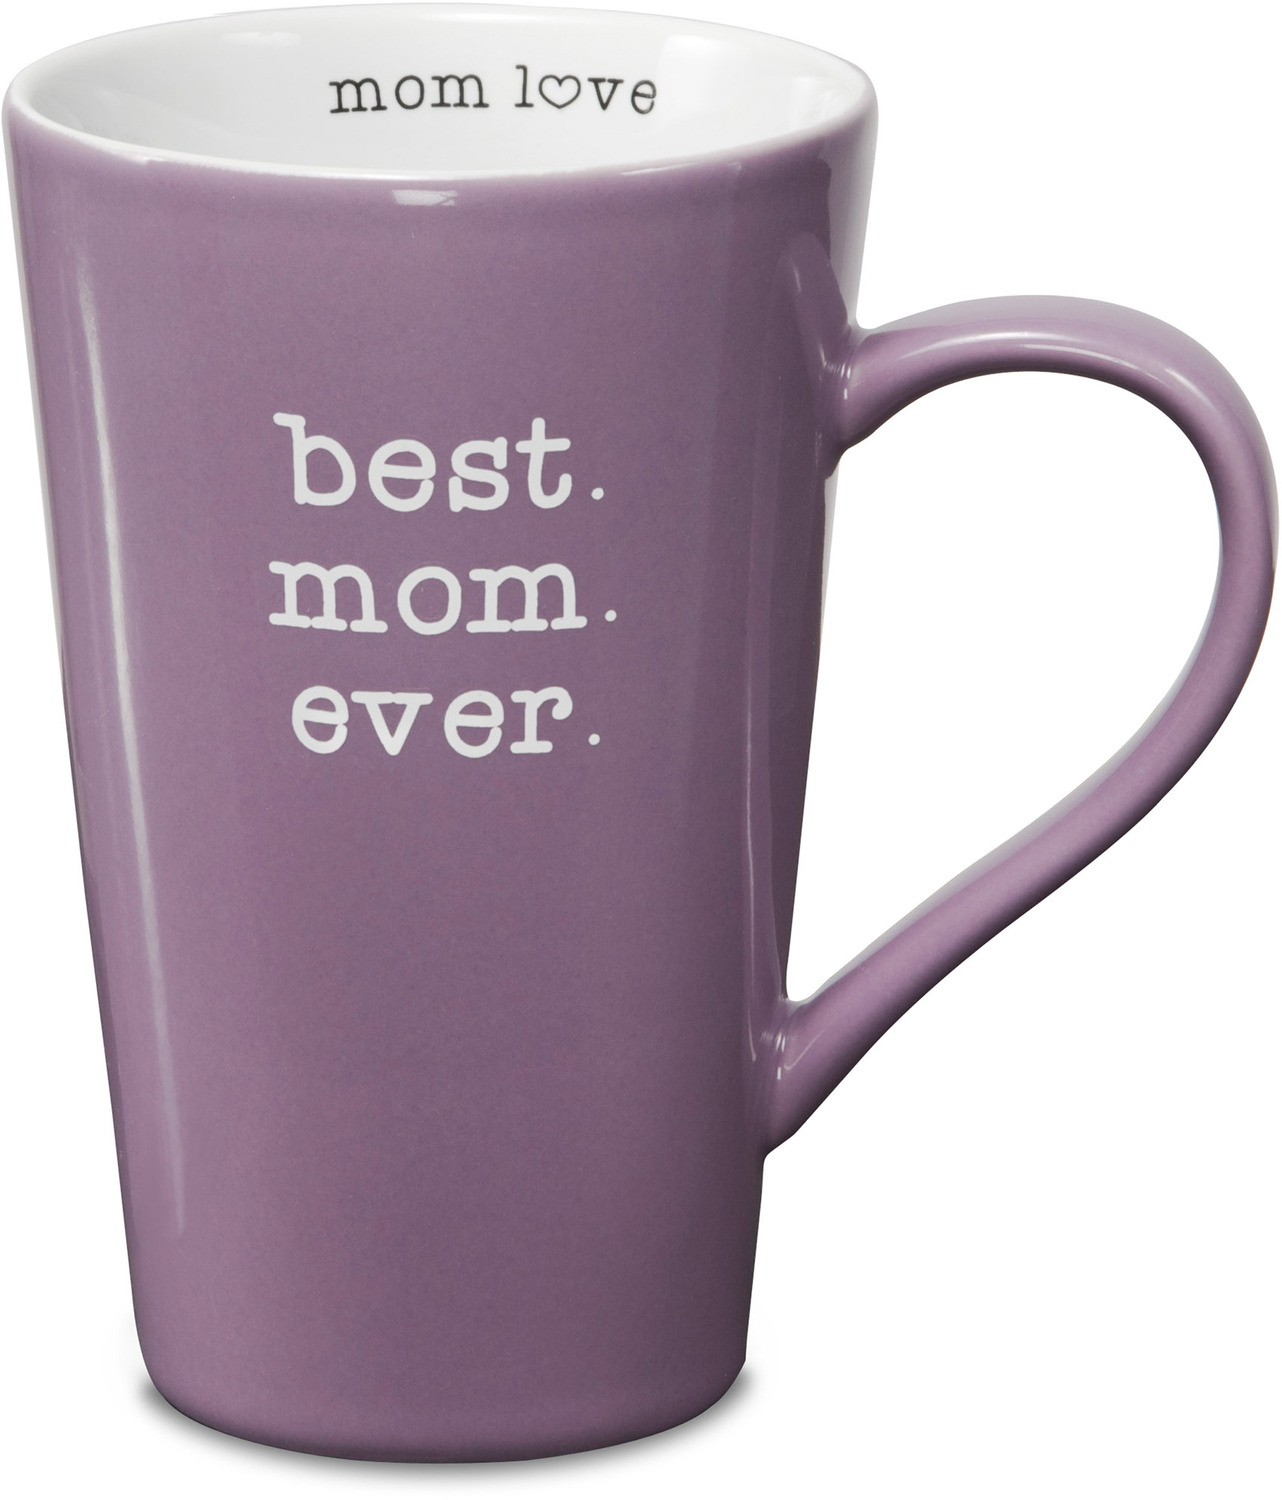 Best Mom by Mom Love - <em>Best Mom Ever</em> - Large Coffee/Tea Mug, 18 oz -